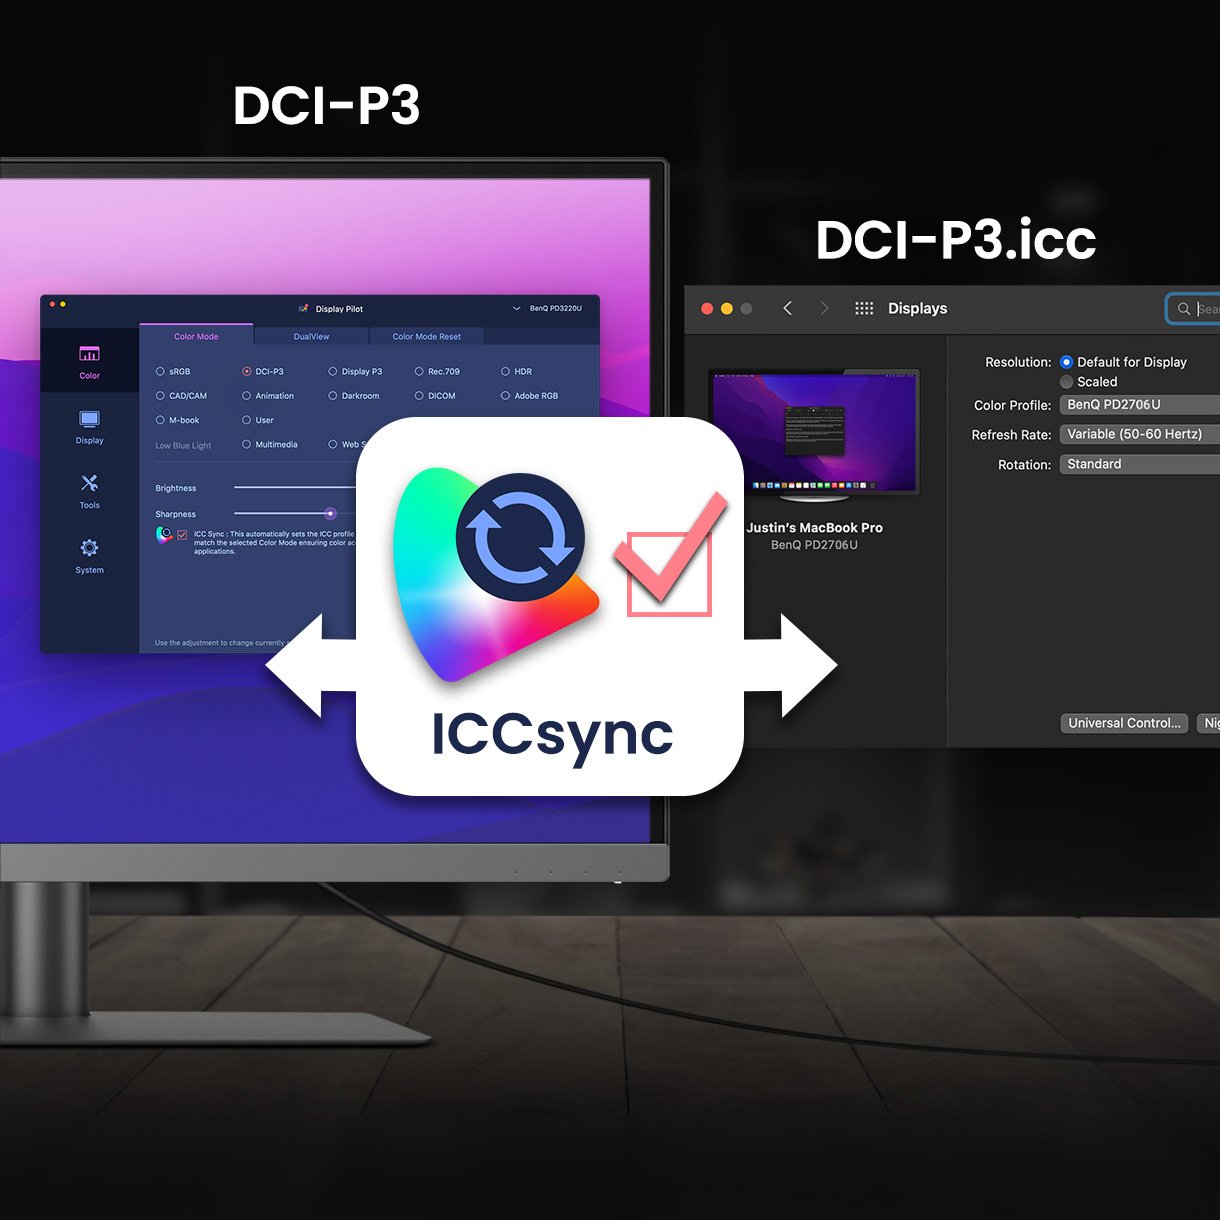 BenQ ICCsync potriveşte şi sincronizează automat profilurile ICC pe monitor atunci când schimbaţi modurile de culoare şi, de asemenea, între laptopul dvs. şi monitorul BenQ. Toate acestea se fac instantaneu.